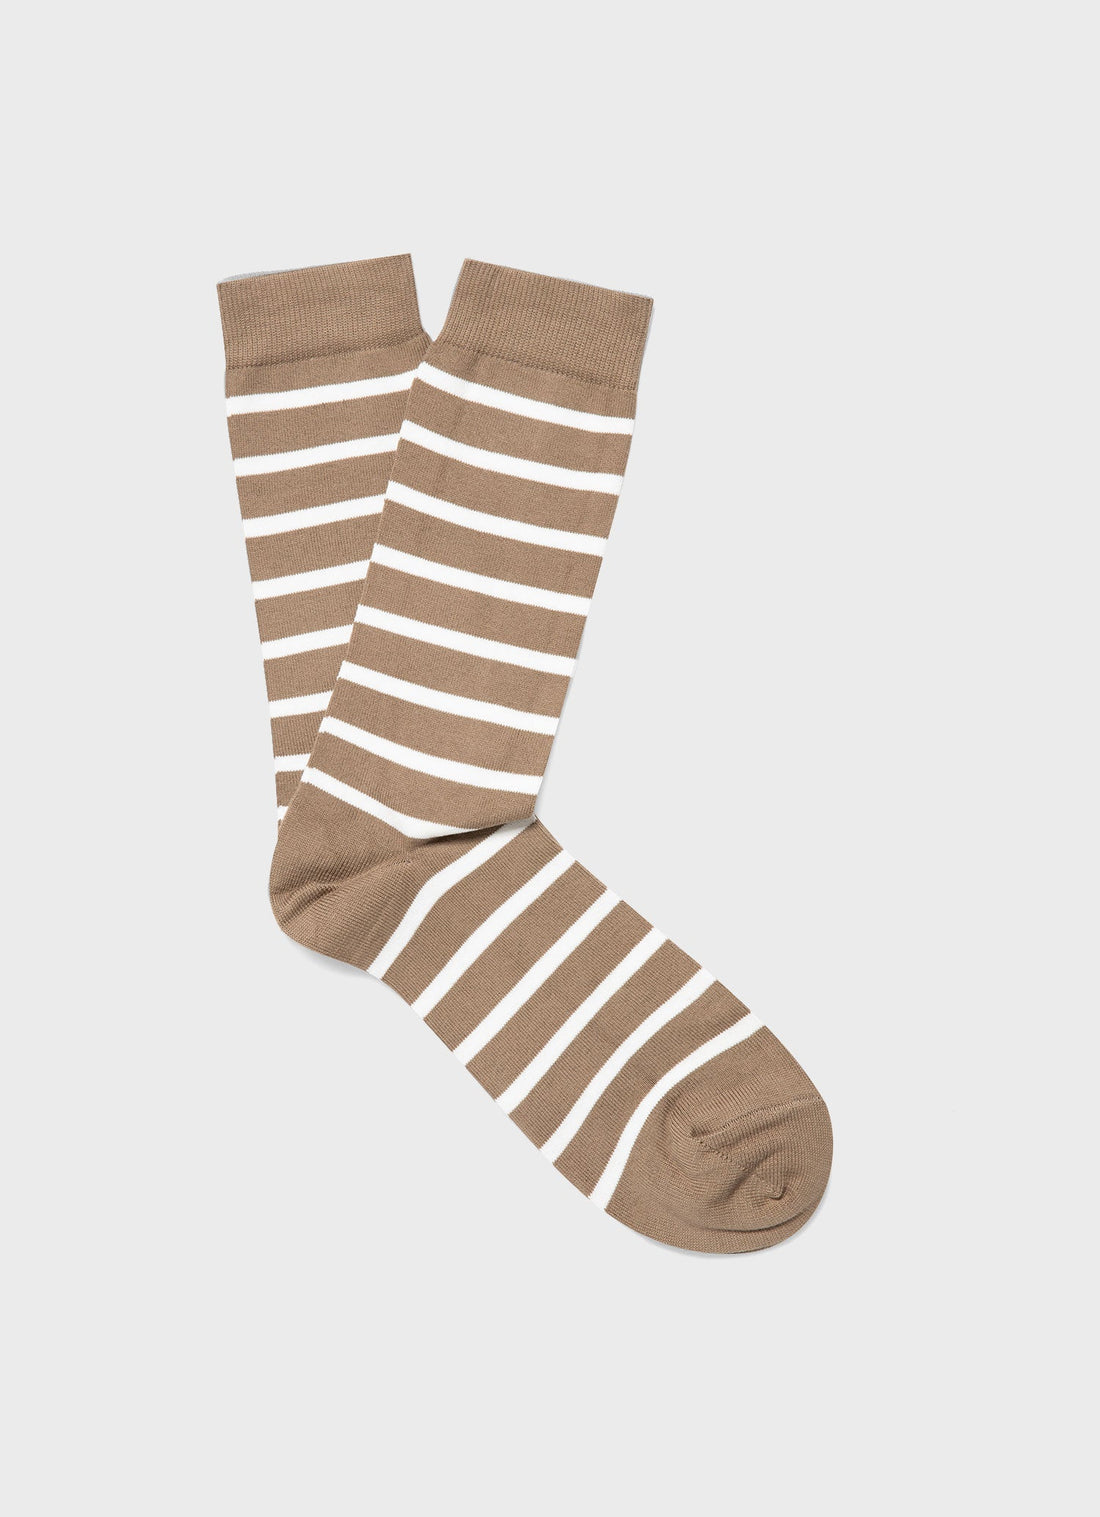 Men's Cotton Socks in Dark Stone/Ecru Breton Stripe